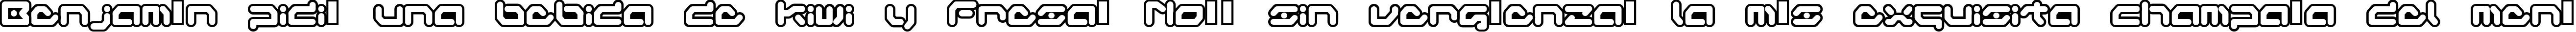 Пример написания шрифтом Gameboy Gamegirl текста на испанском